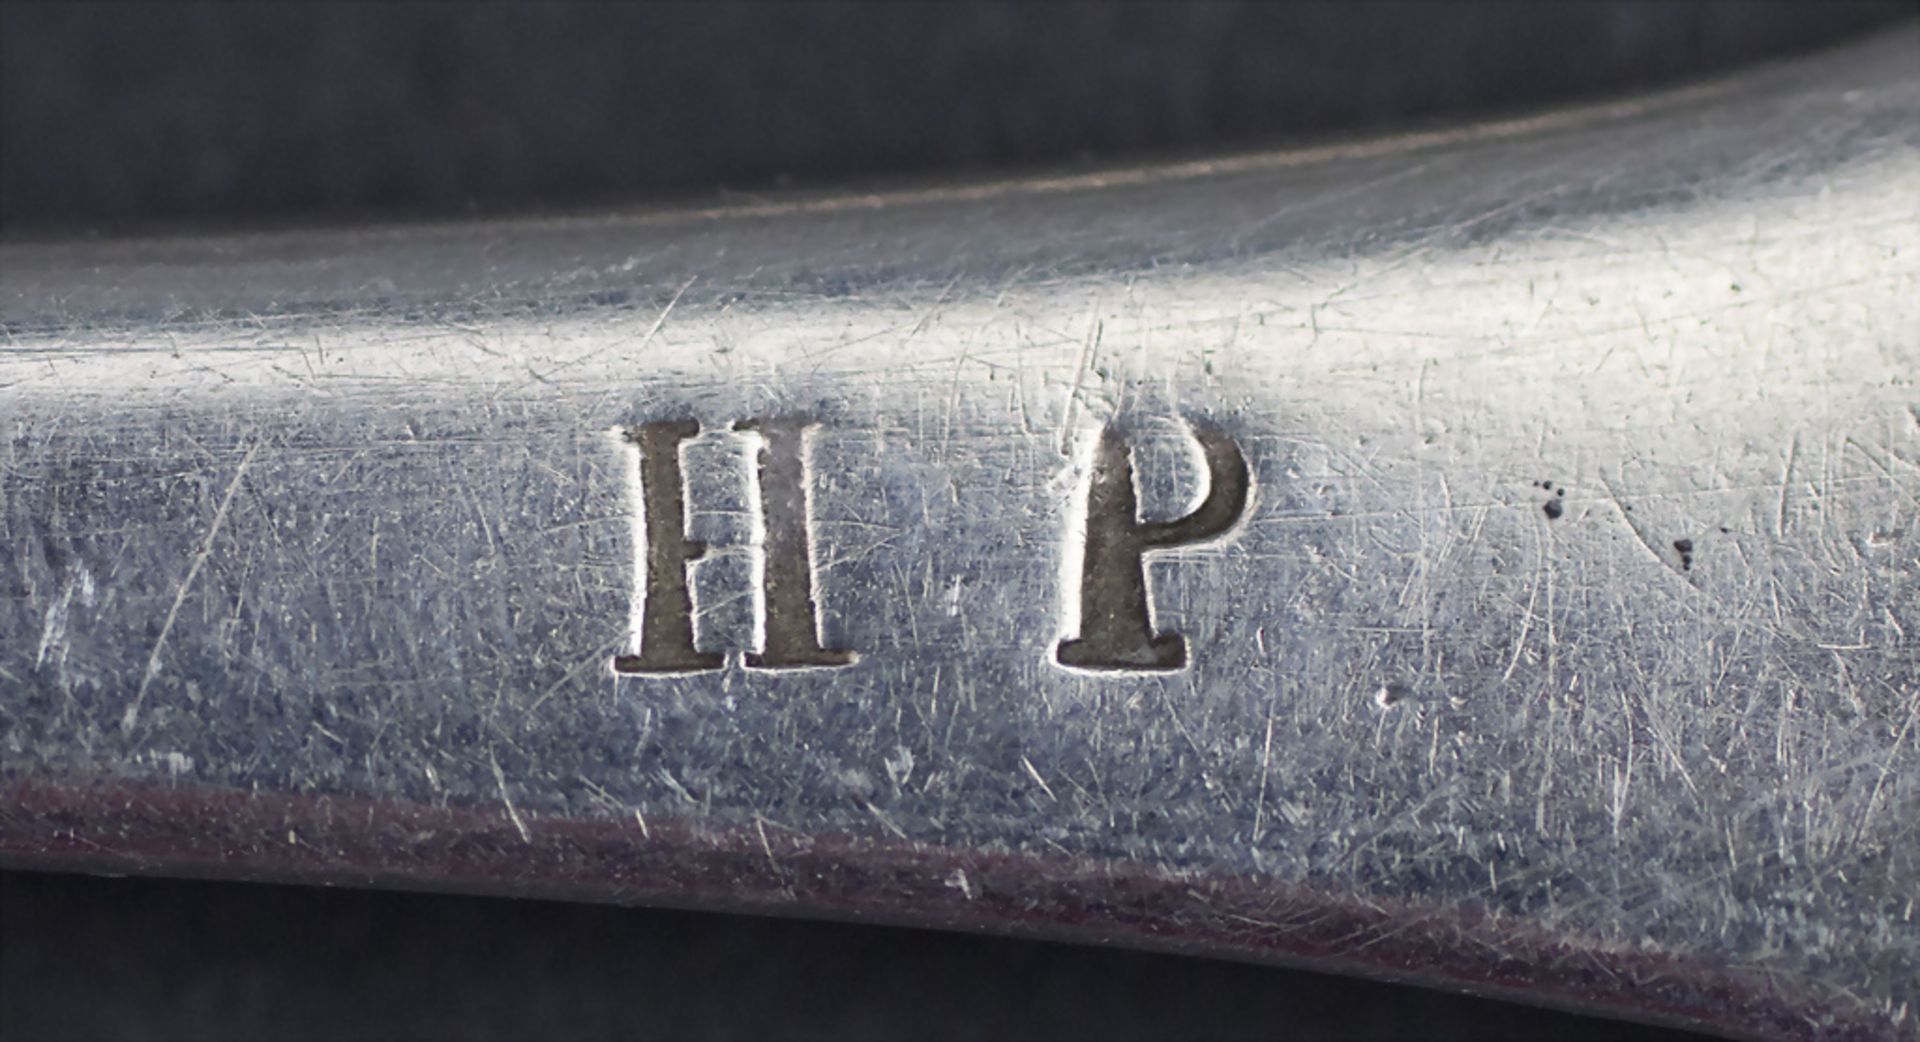 12-tlg. Silberbesteck / A 12-piece set of silver cutlery, Paris, nach 1839 - Bild 7 aus 7